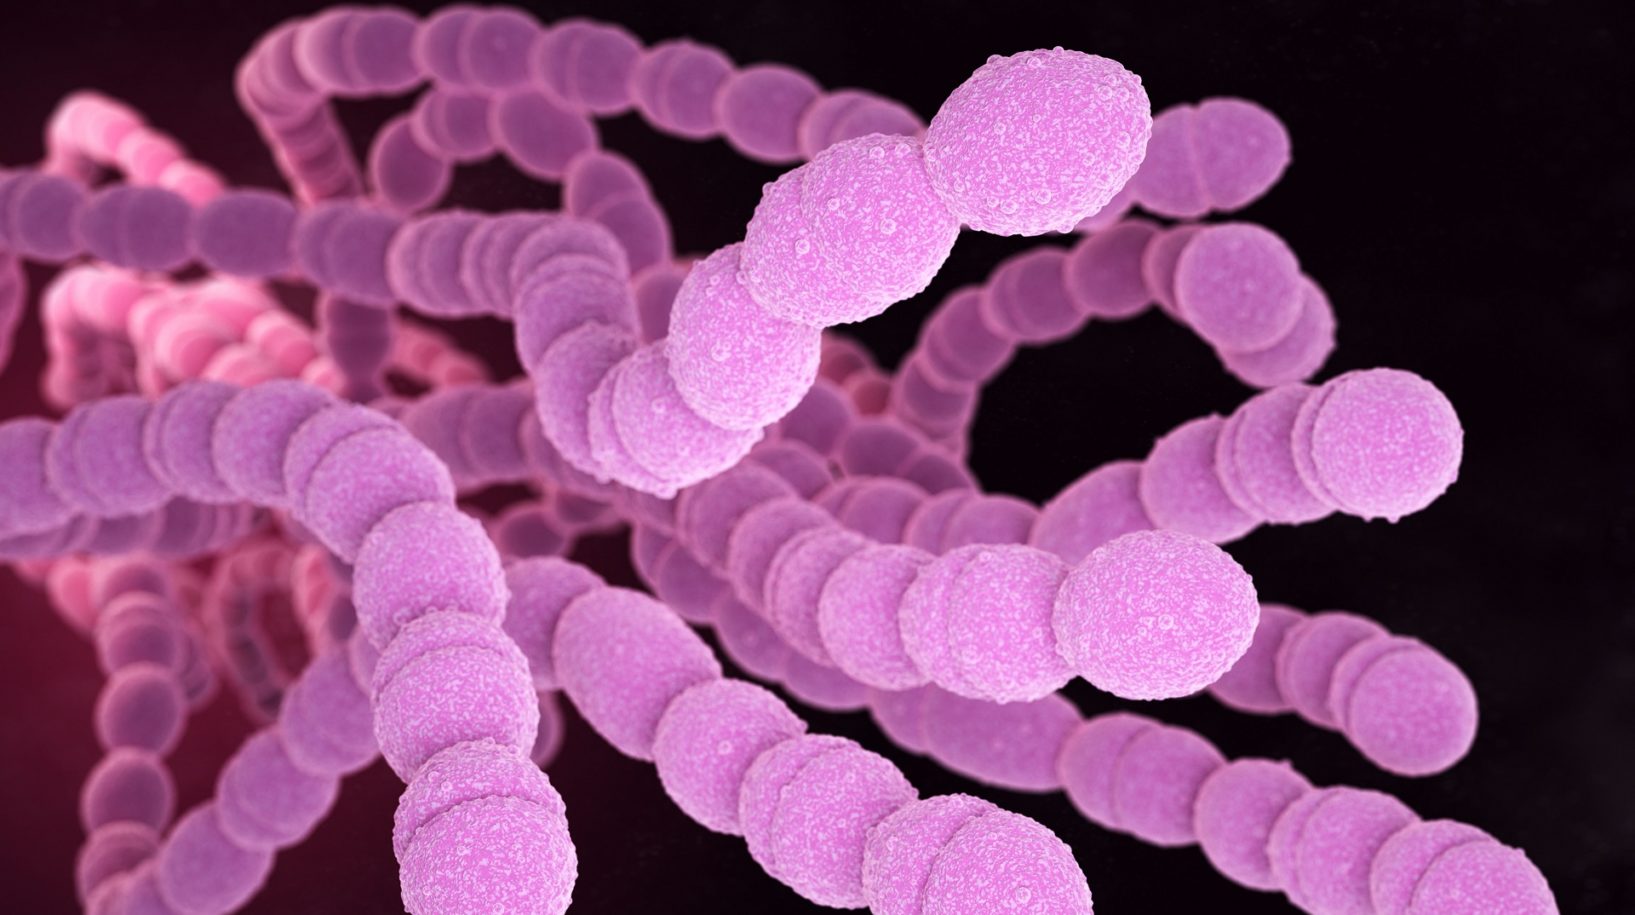 Streptococcus pneumoniae oder Pneumokokken sind grampositive coccusförmige pathogene Bakterien, die neben Lungenentzündungen viele Arten von Pneumokokken-Infektionen verursachen. 3D-Illustration